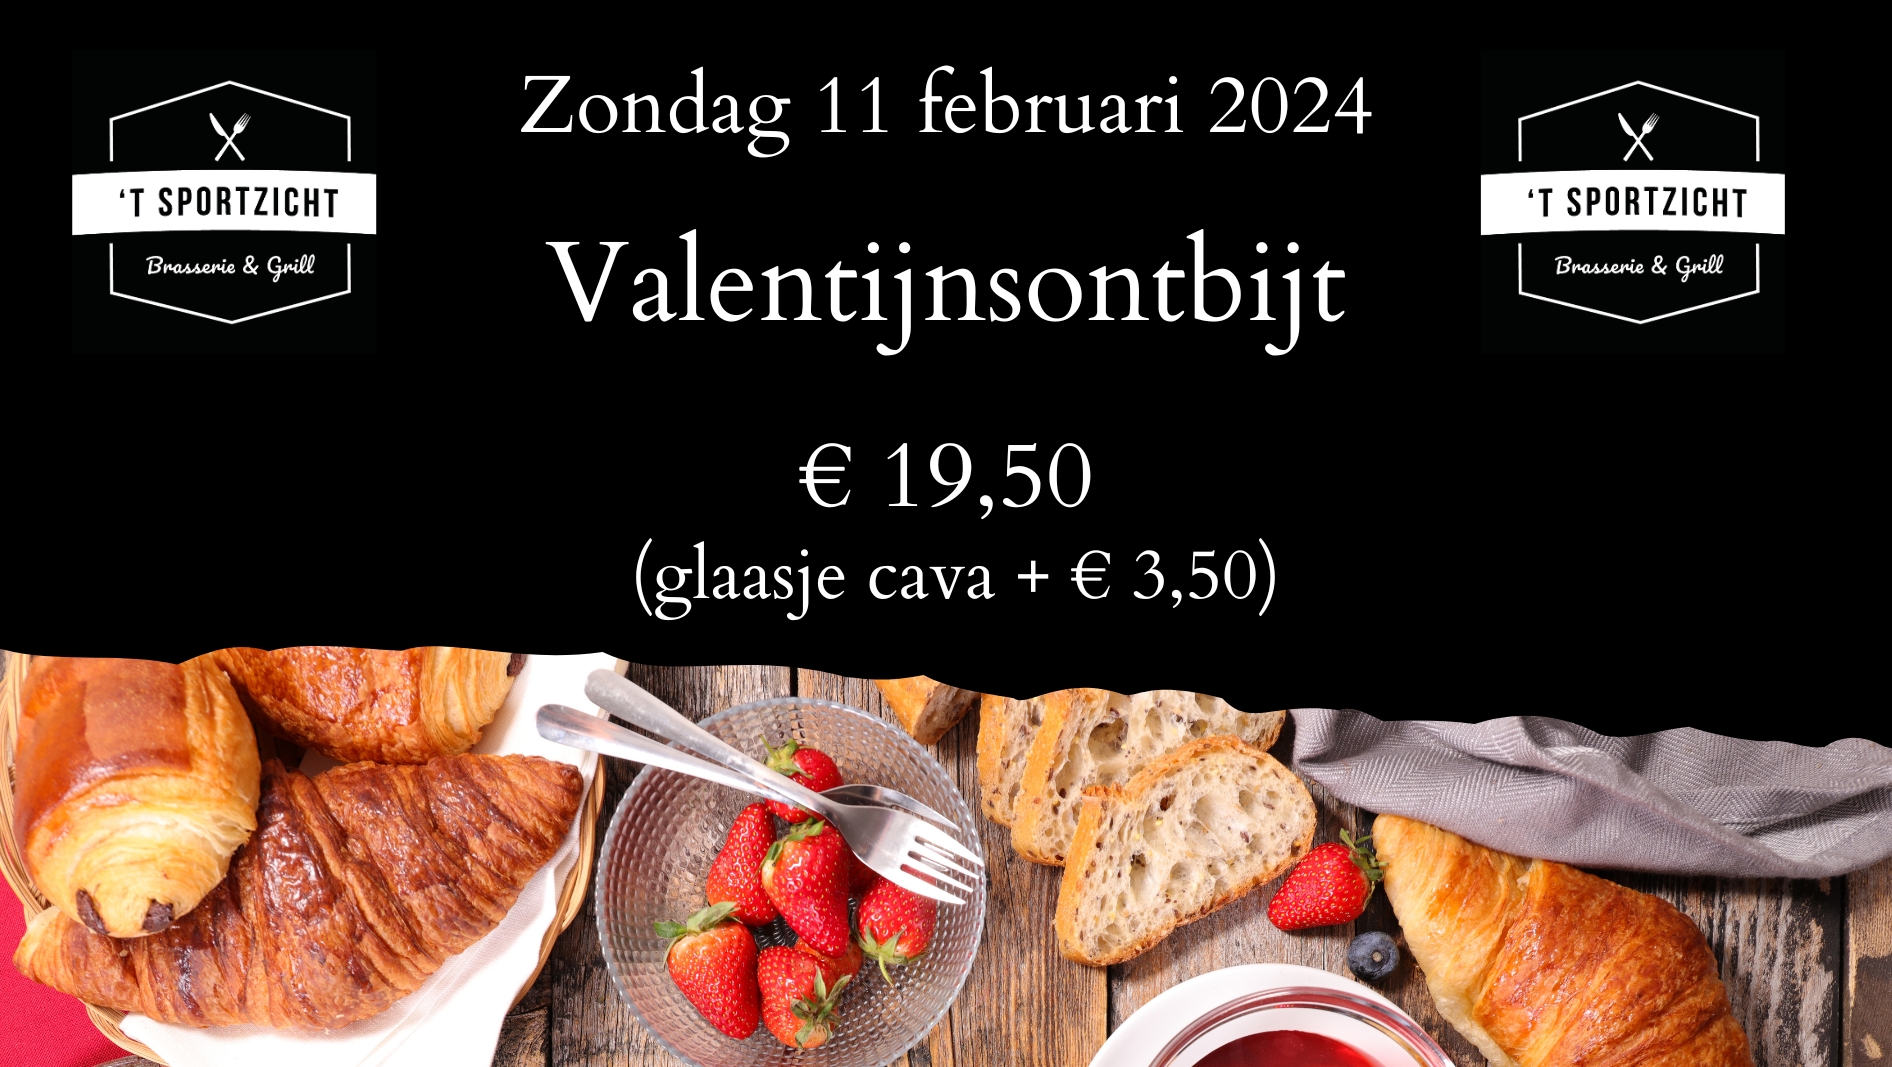 Valentijnsontbijt op zondag 11 februari 2024